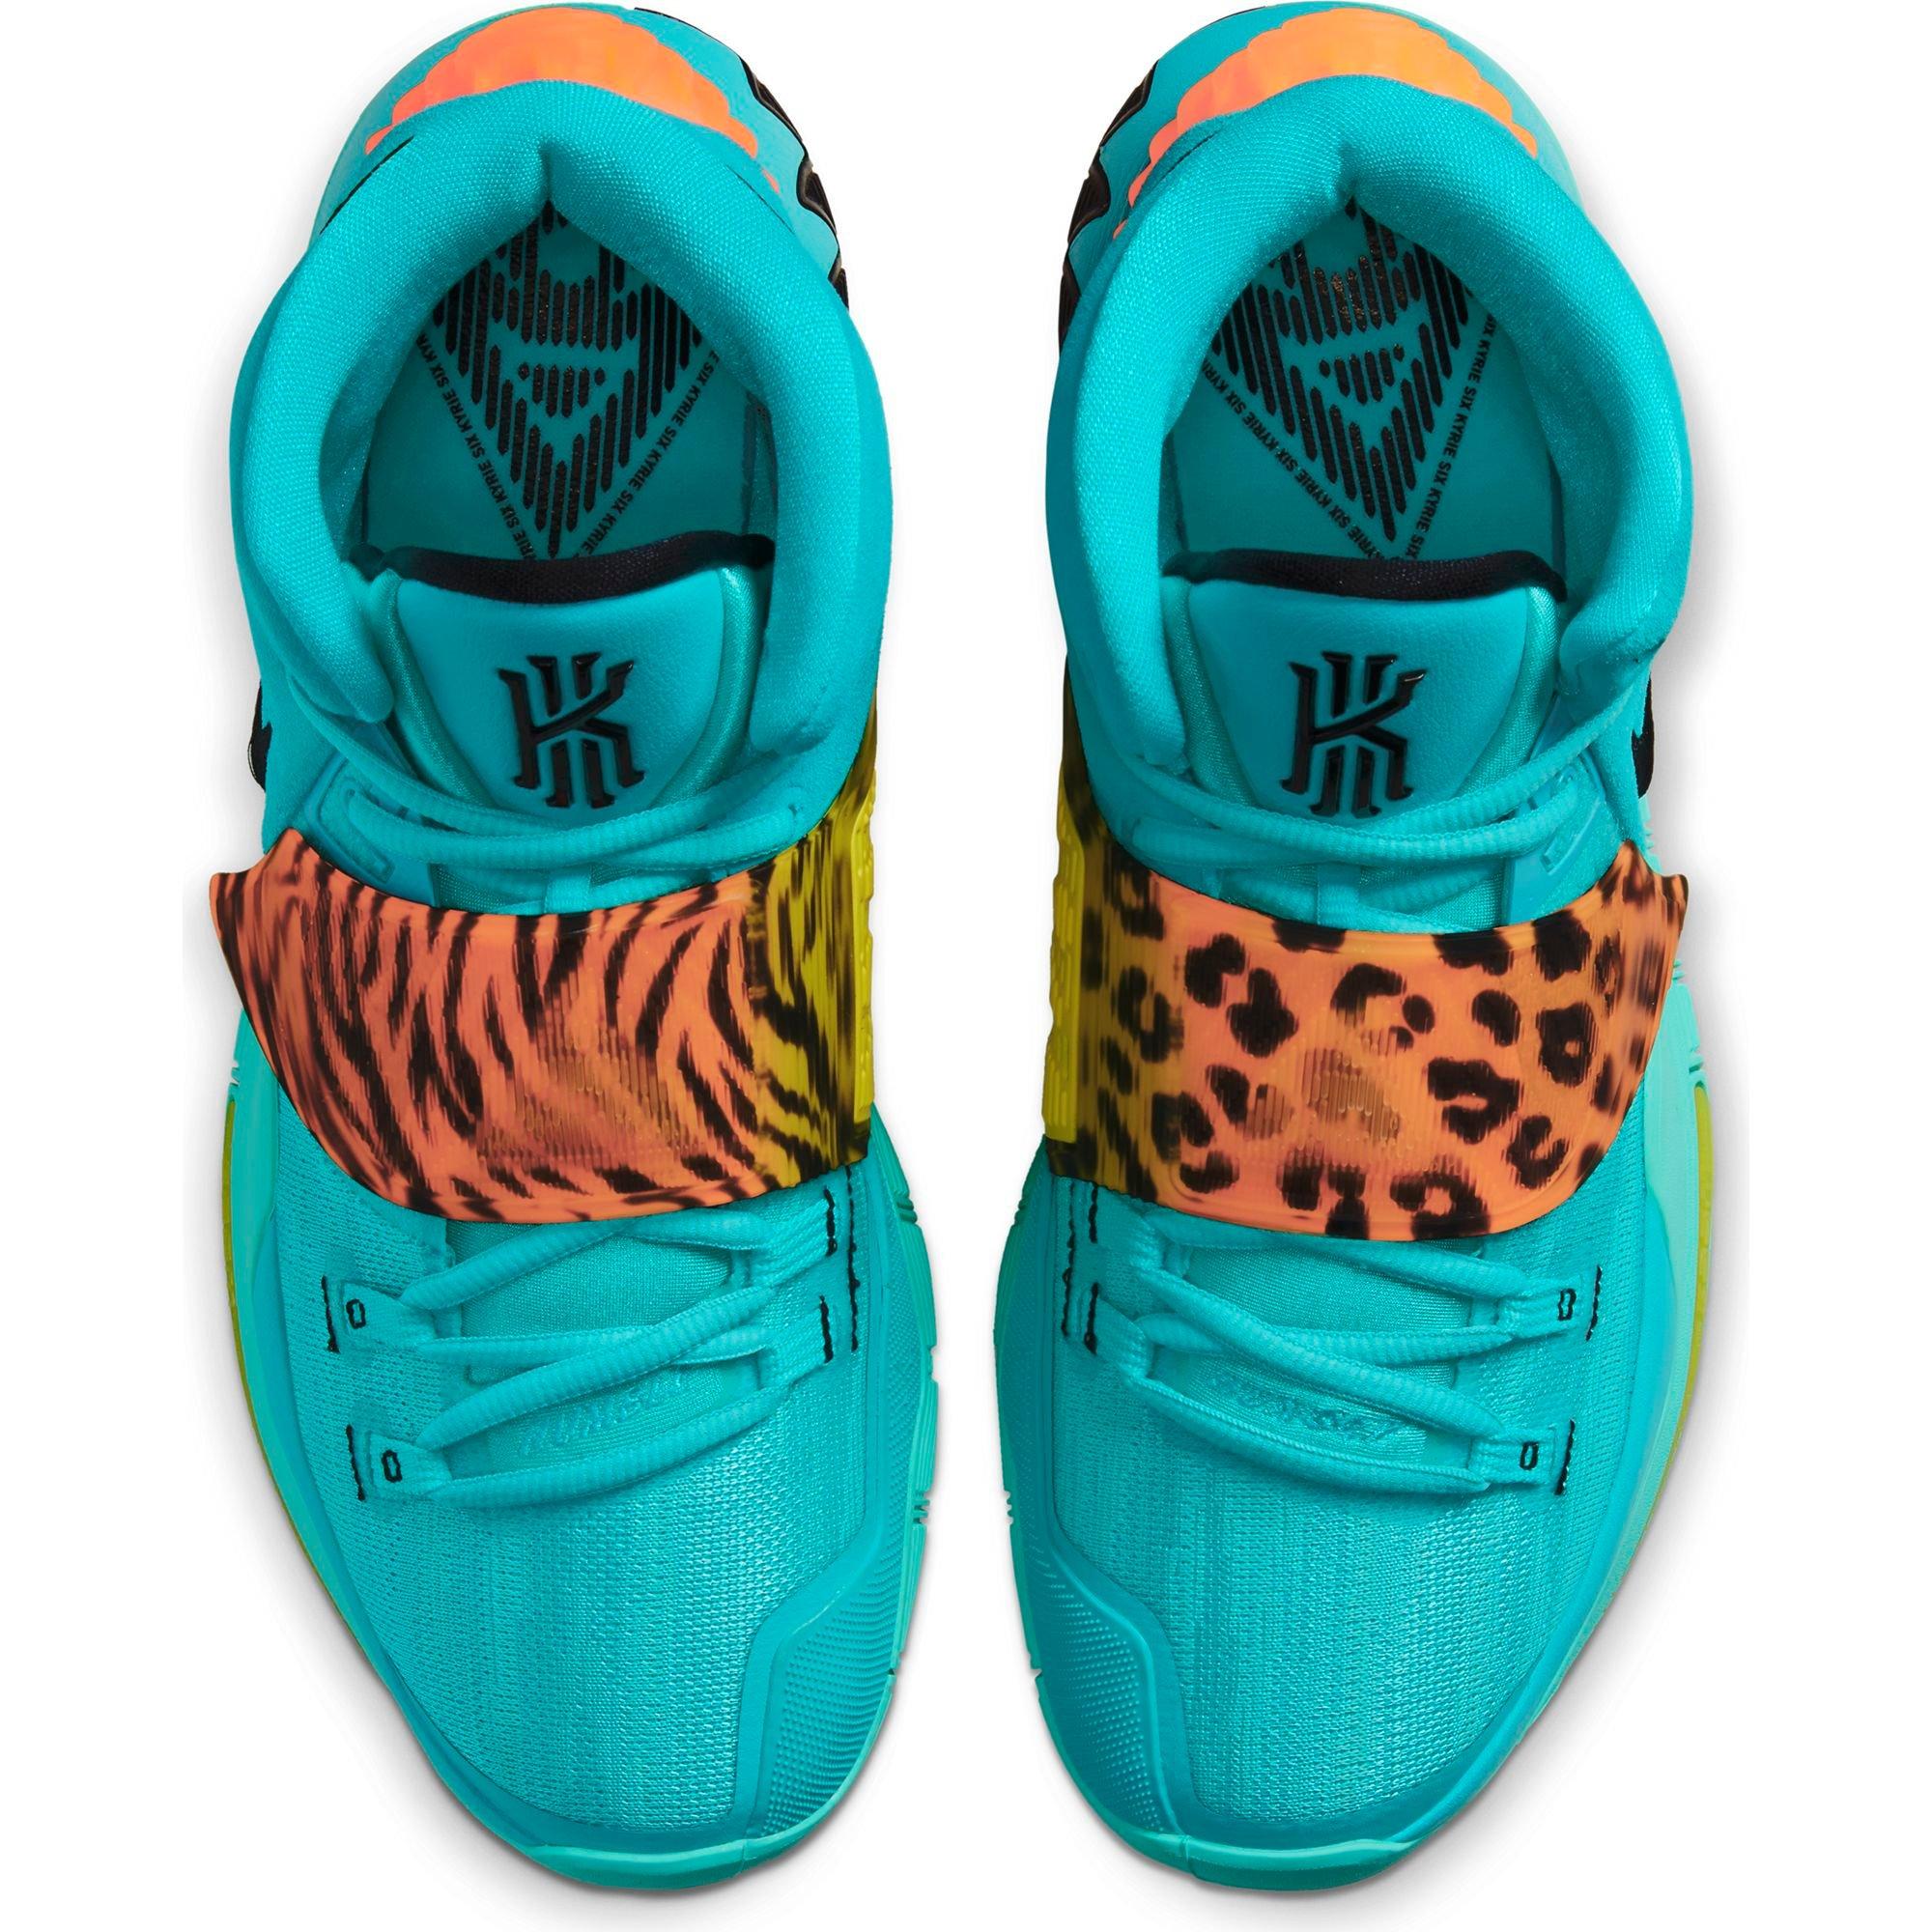 Sneakers Release – Nike Kyrie 6 “Oracle 